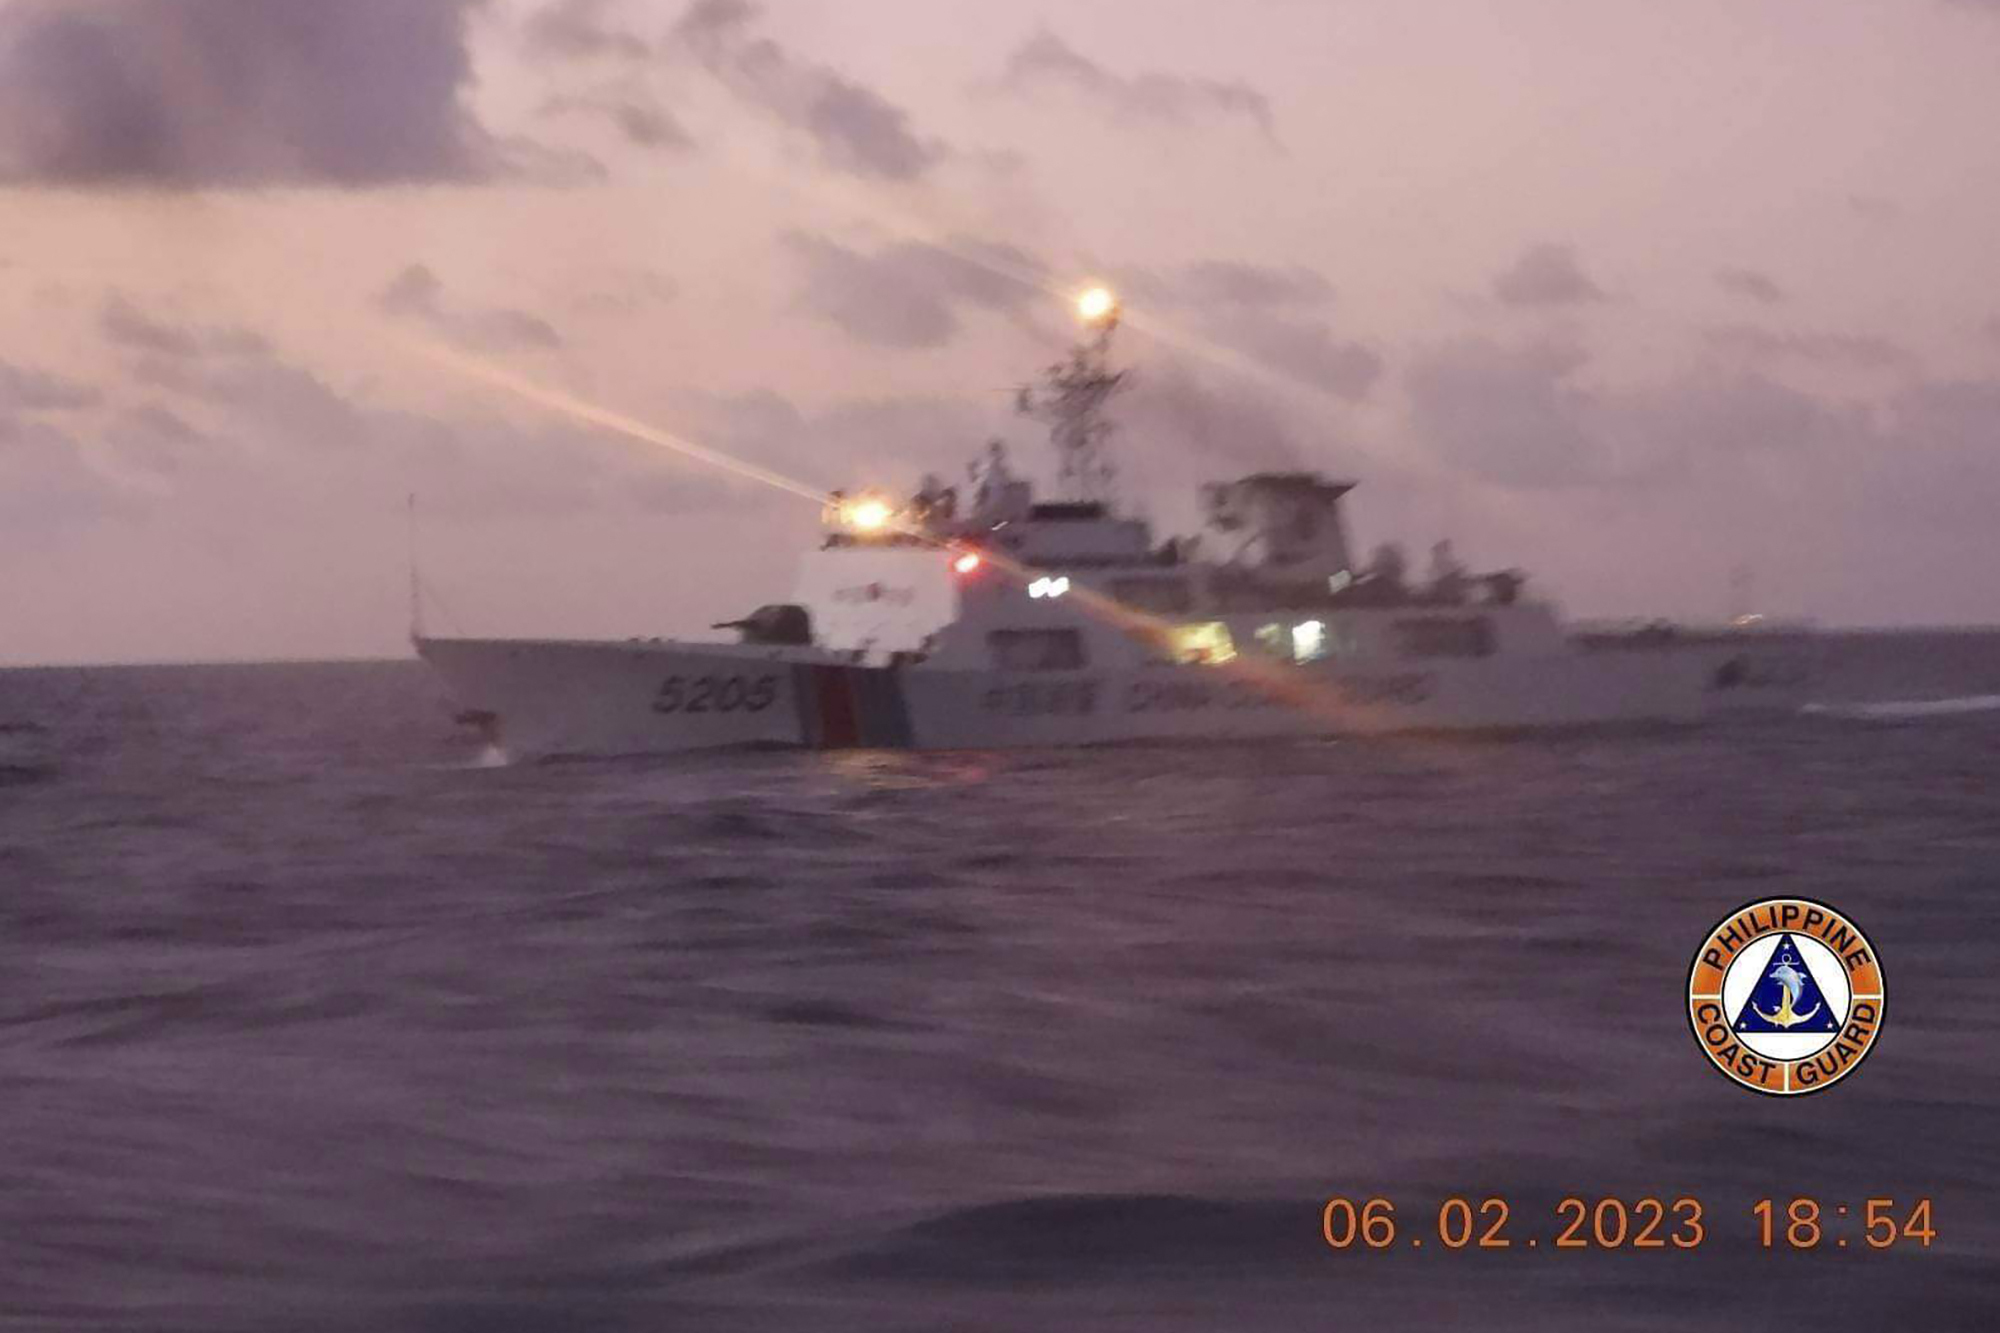 Filipinas acusó a China de utilizar un láser militar contra uno de sus barcos en el mar Meridional